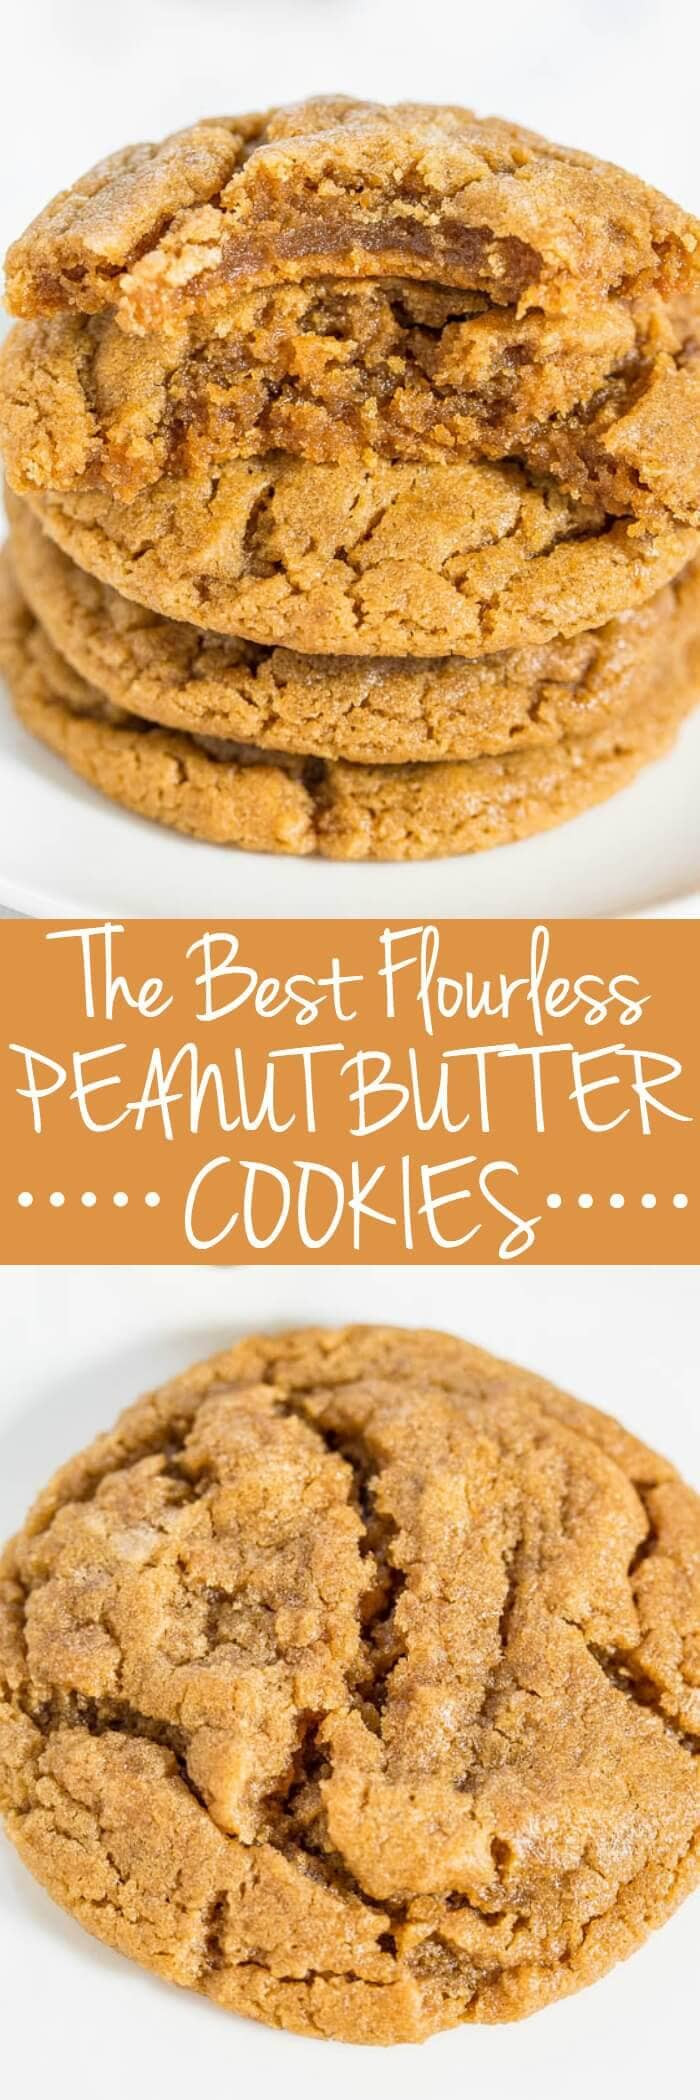 Best Gluten Free Cookie Recipes
 50 Best Gluten Free Cookie Recipes